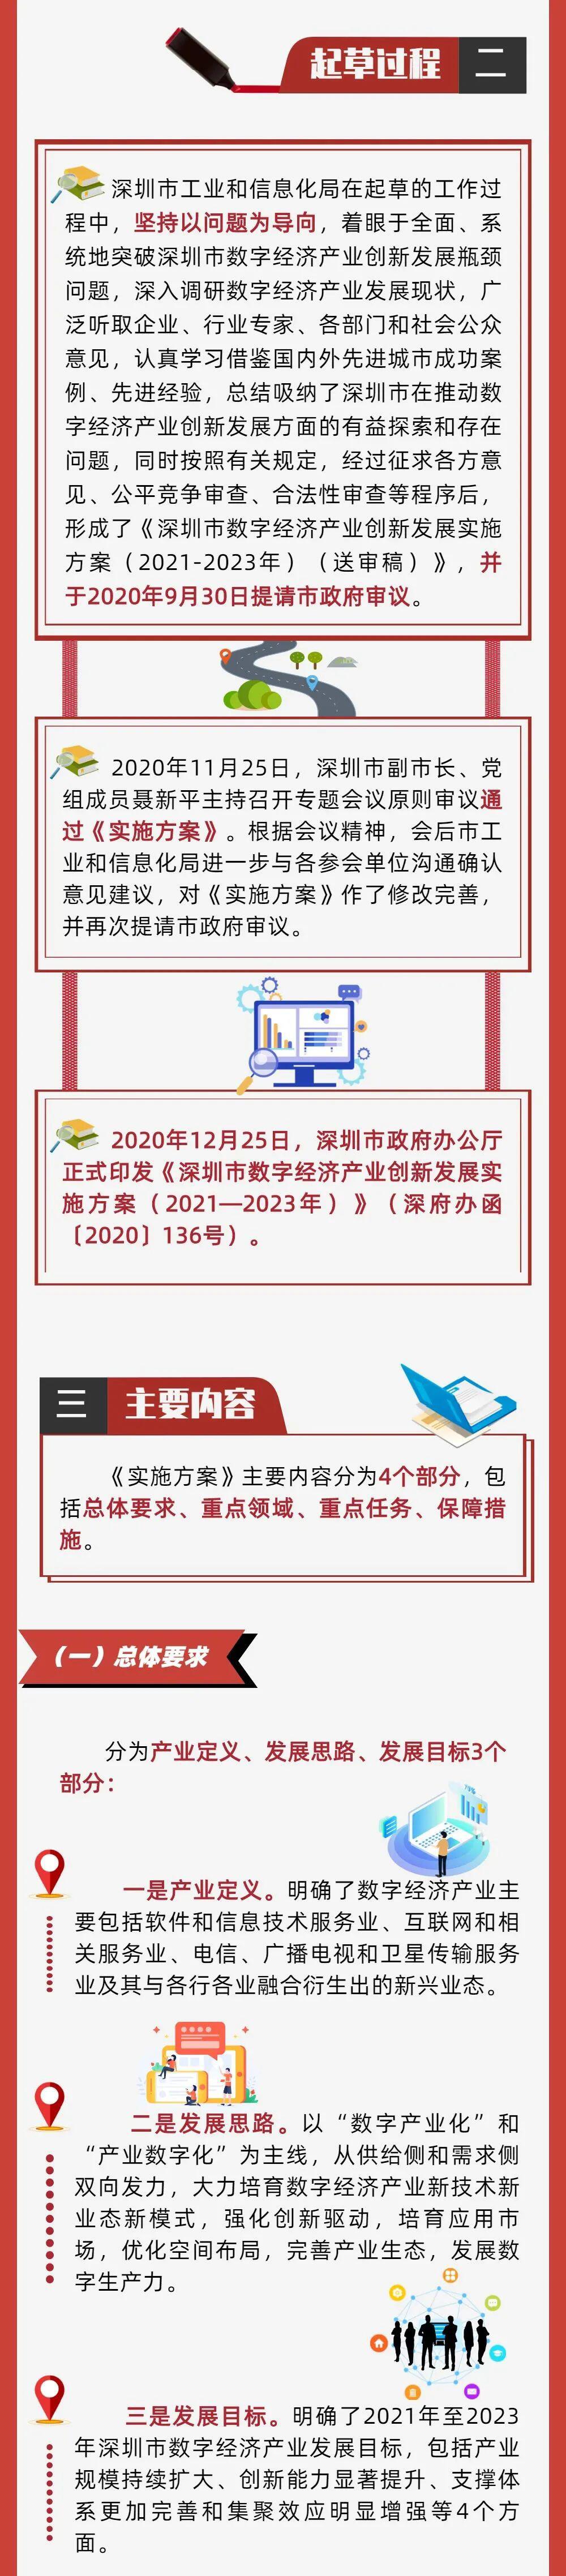 深圳印发《深圳市数字经济产业创新发展实施方案（2021—2023年）》